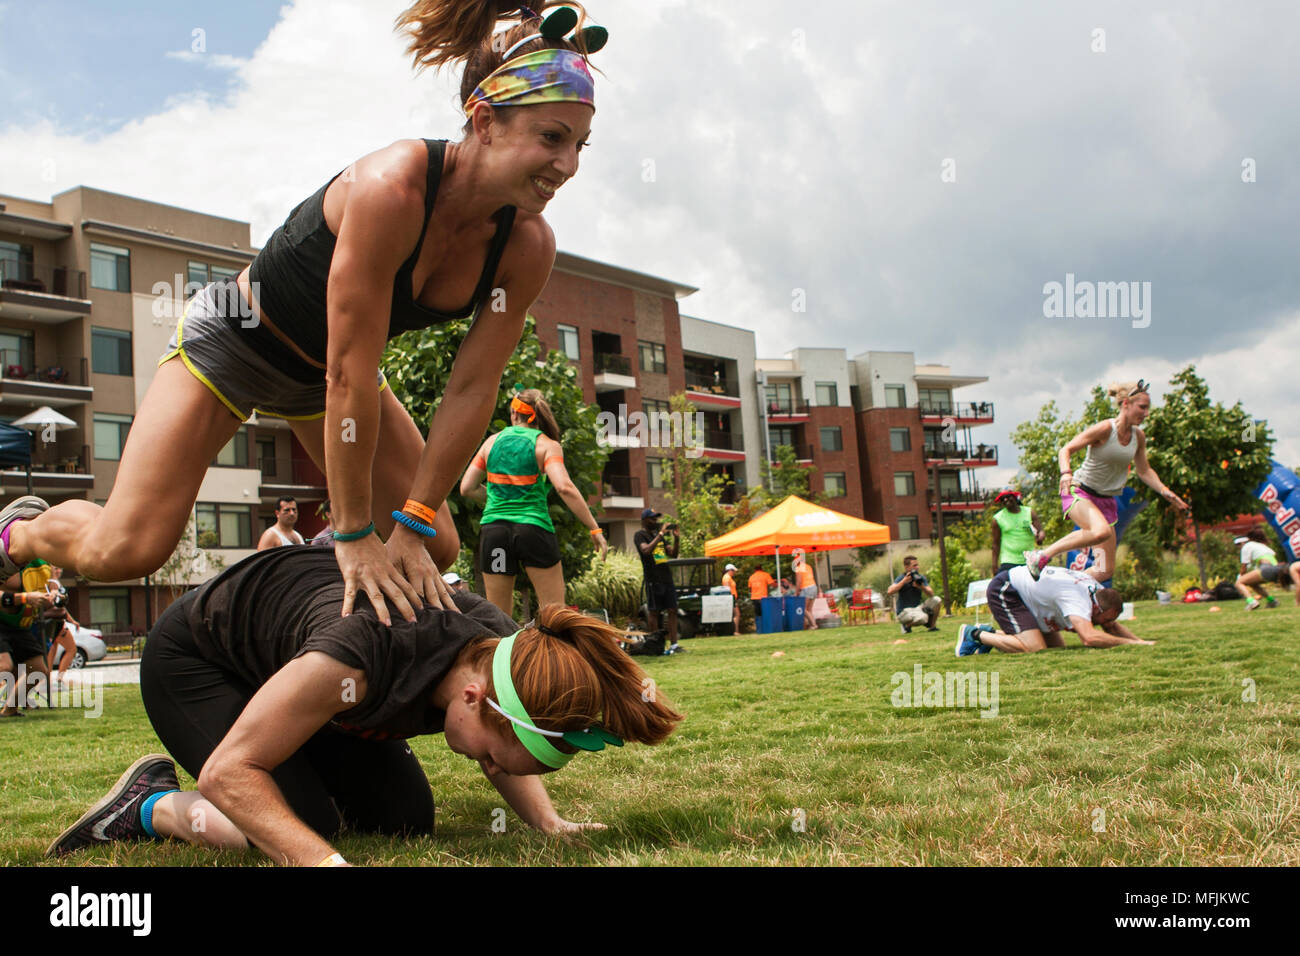 Zwei Frauen spielen Leap Frog, einer der vielen Kinder Spiele von Mannschaften an der Atlanta Feld Tag Ereignis gespielt am 16. Juli 2016 in Atlanta, GA. Stockfoto